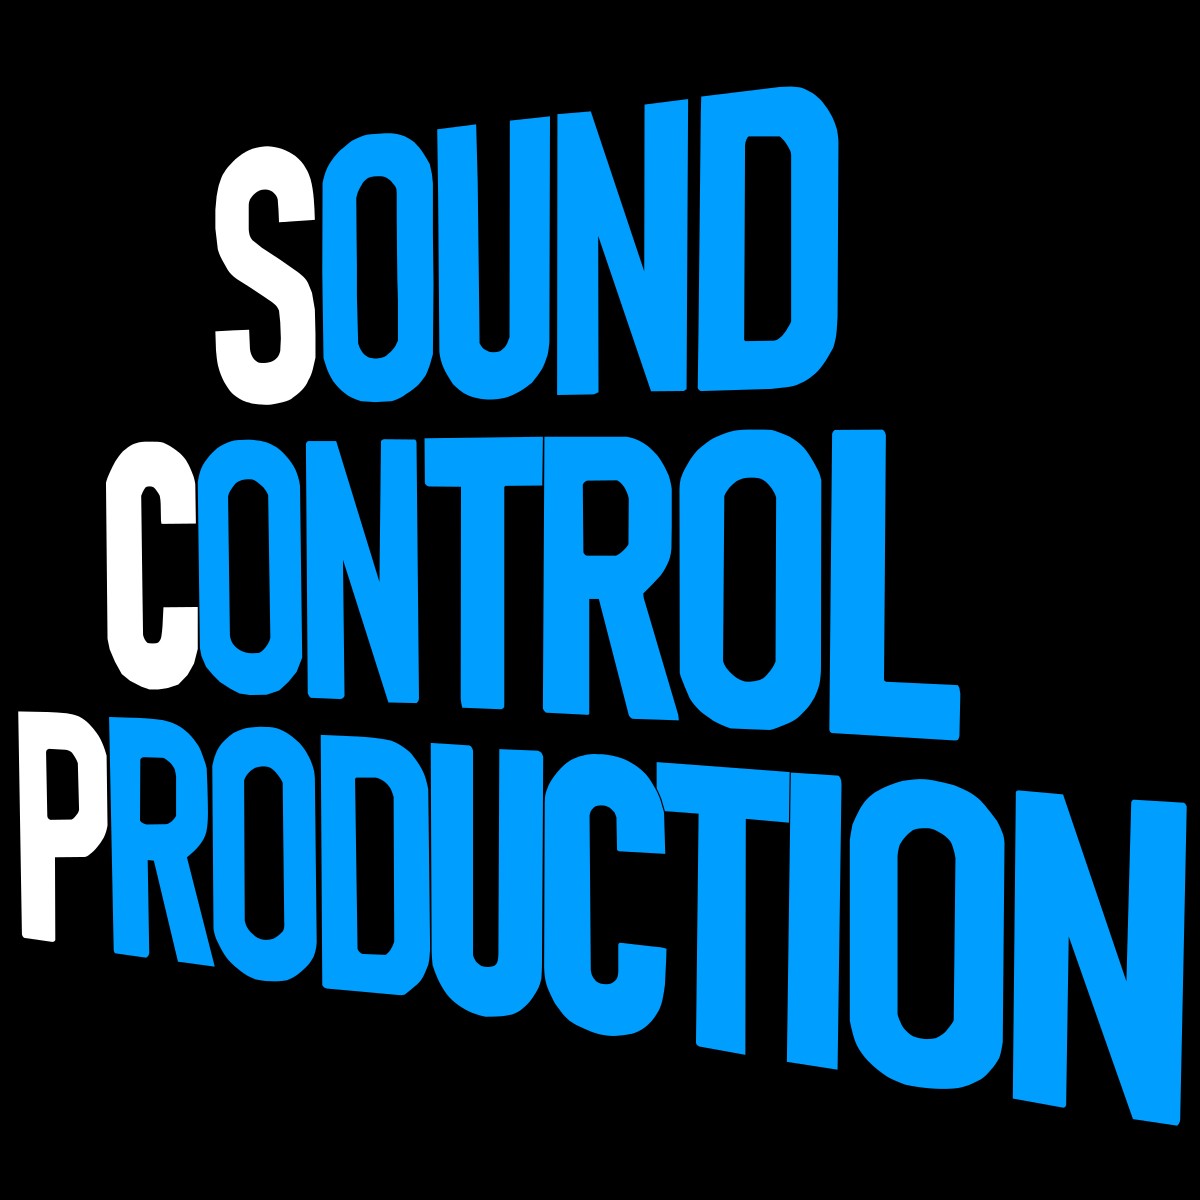 著作権フリーBGM "Sound Control Production"のプロモーション動画です